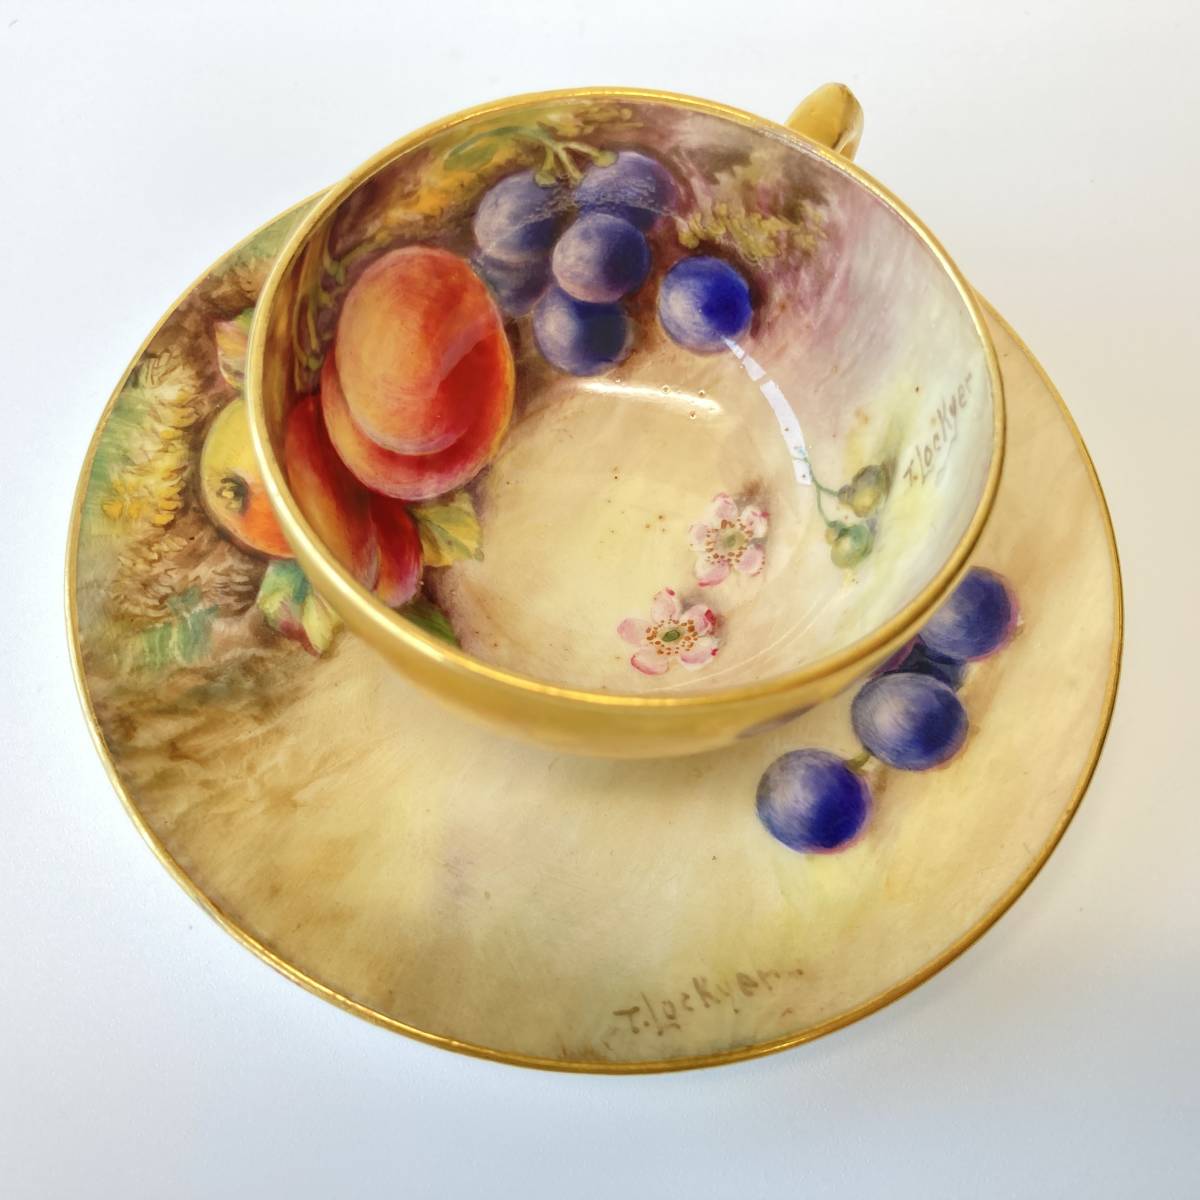 [ высший класс ] Royal Worcester ROYAL WORCESTERpe Inte do фрукты золотая краска маленькая чашка & блюдце фрукты Британия античный 6